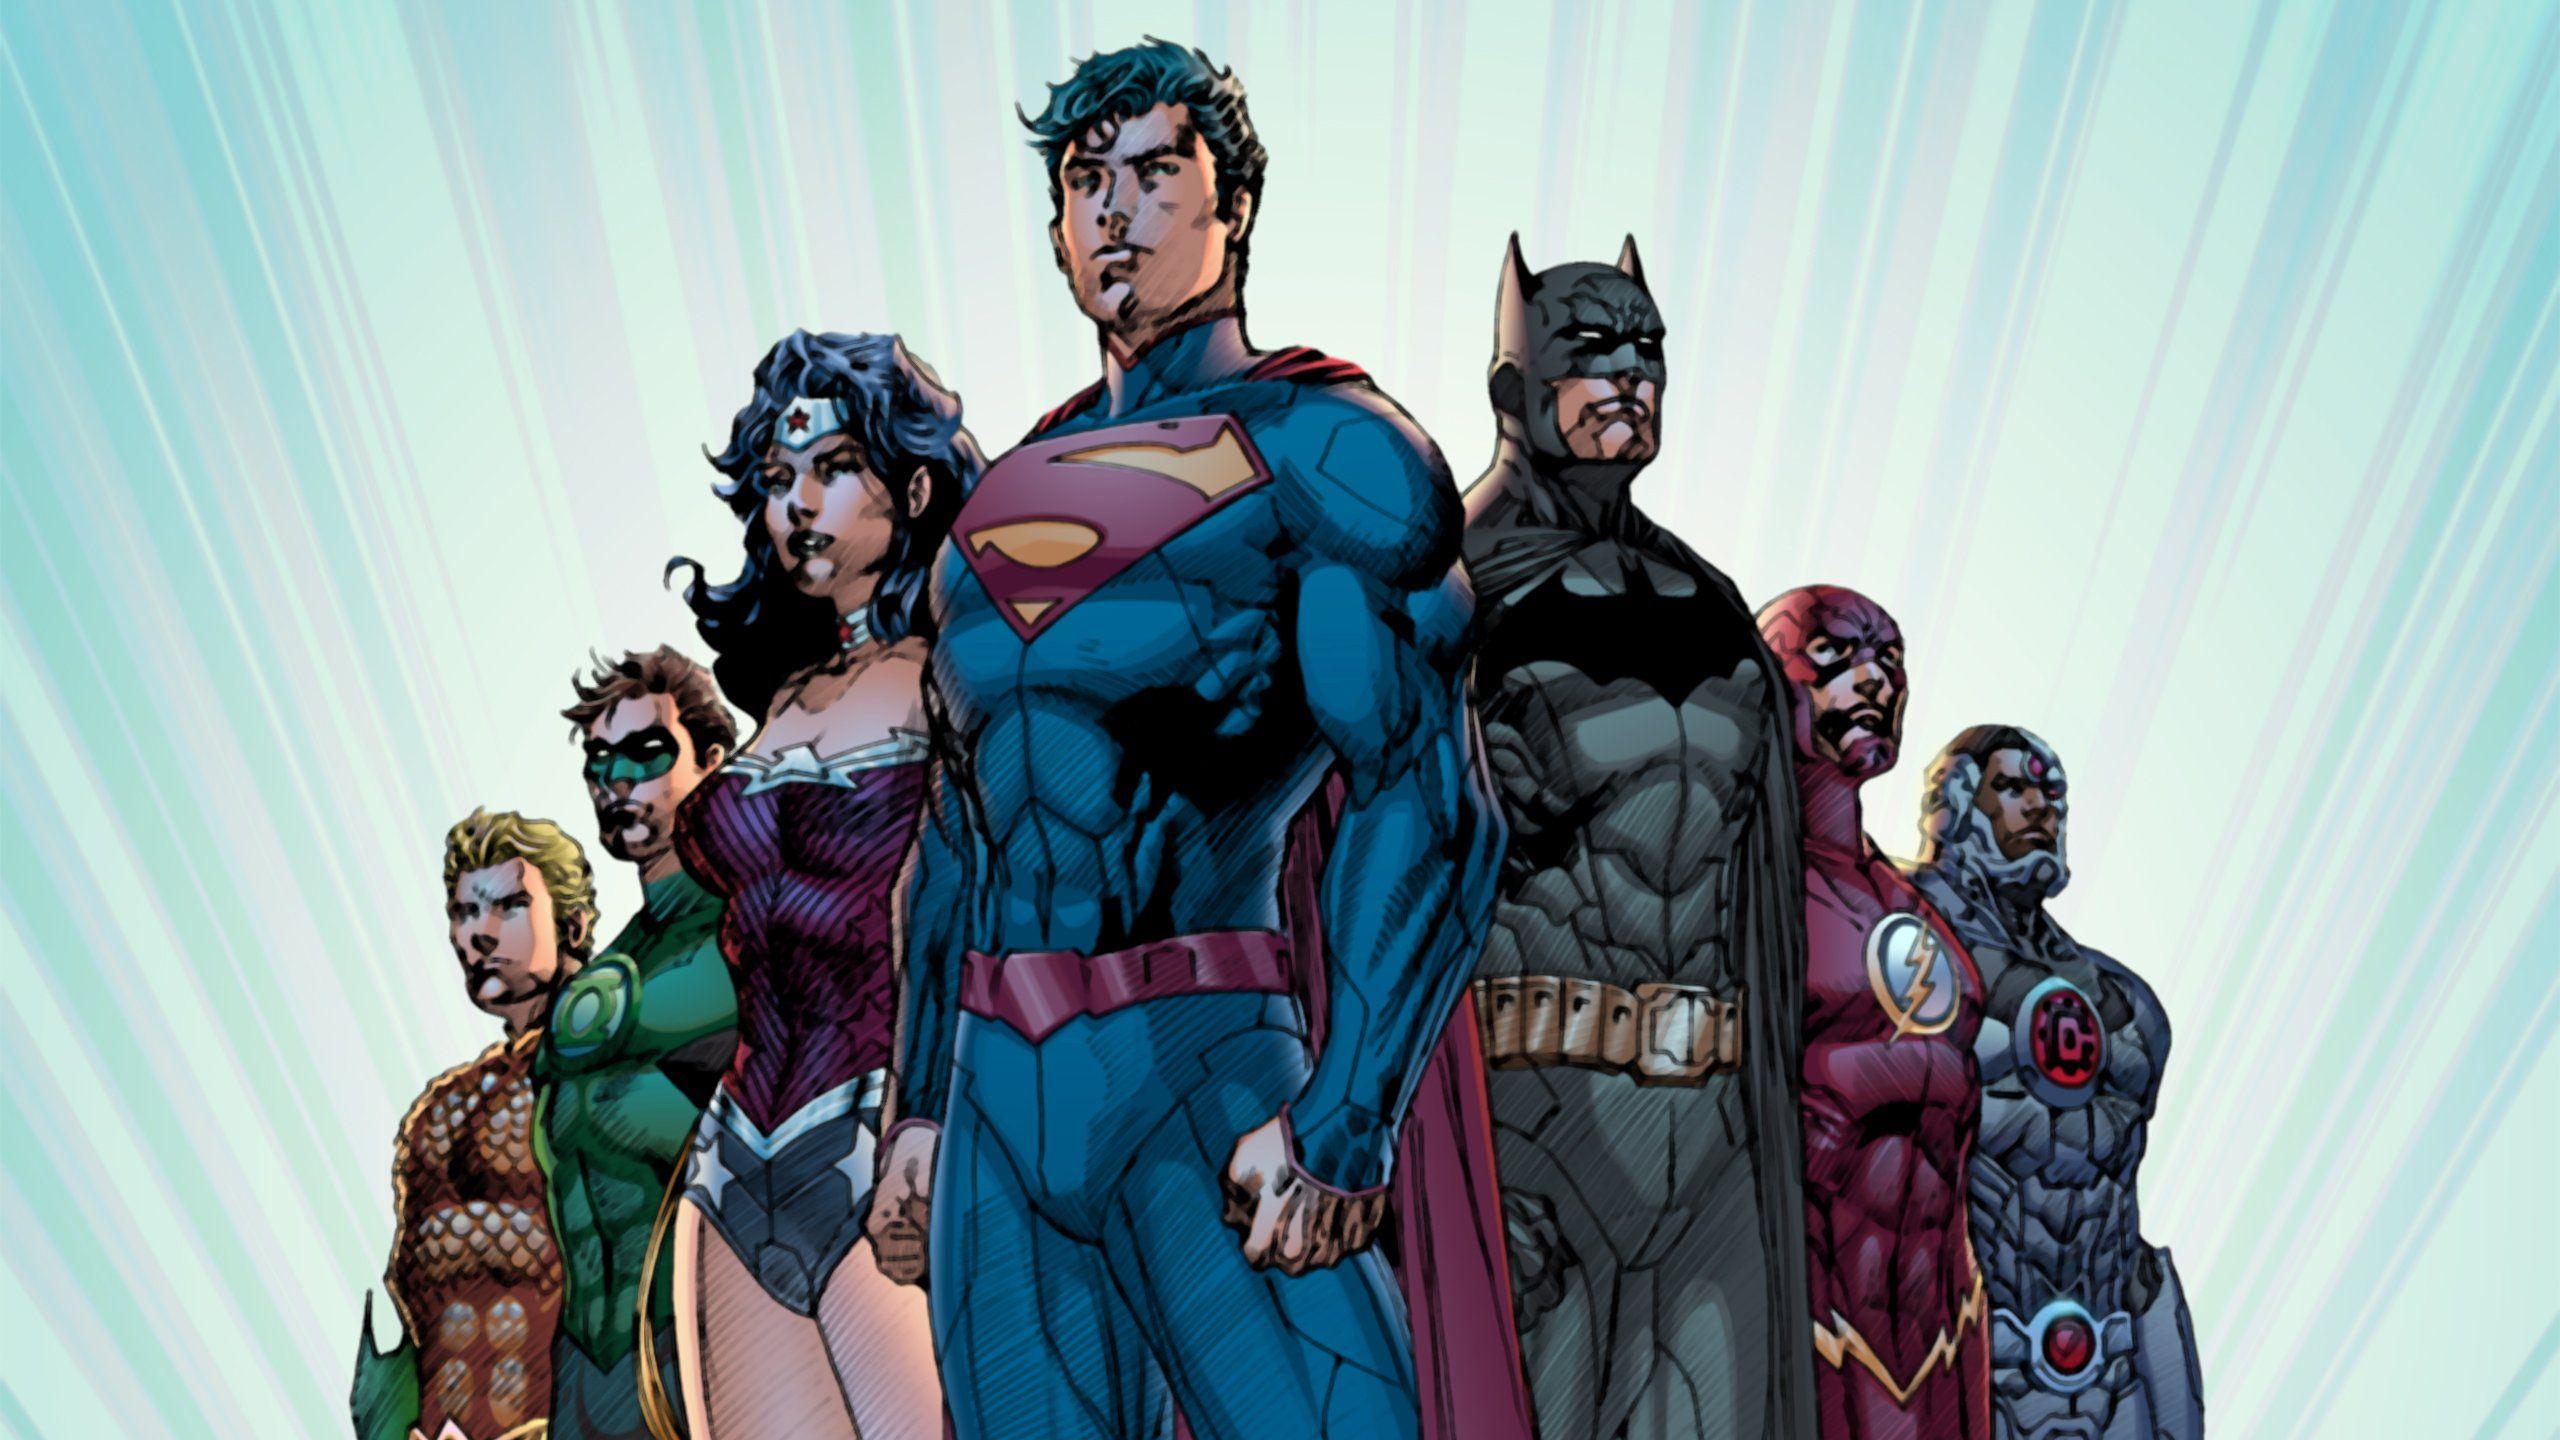 Download 2560x1440 New 52 Justice League Superman Batman